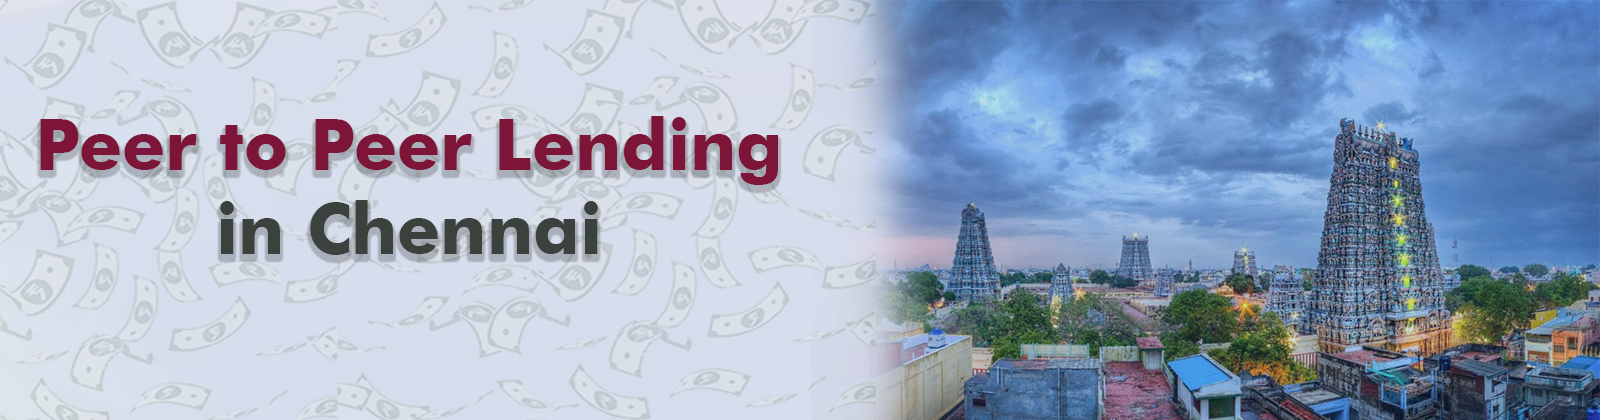 Peer to Peer Lending in Chennai